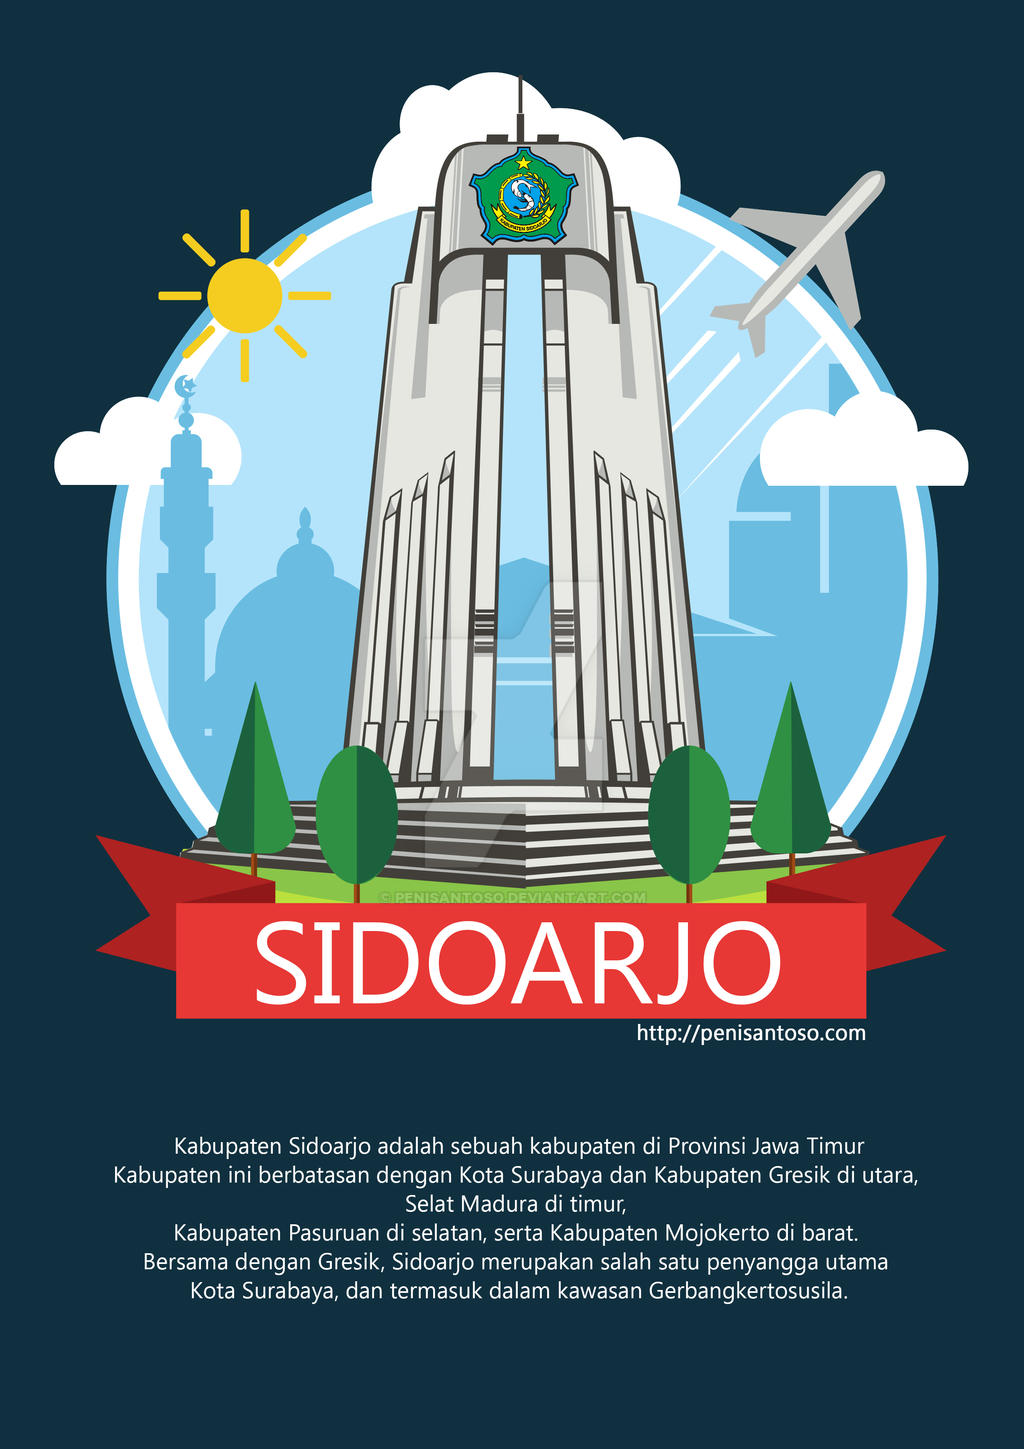 Sidoarjo (City Icon Illustration) by penisantoso on DeviantArt